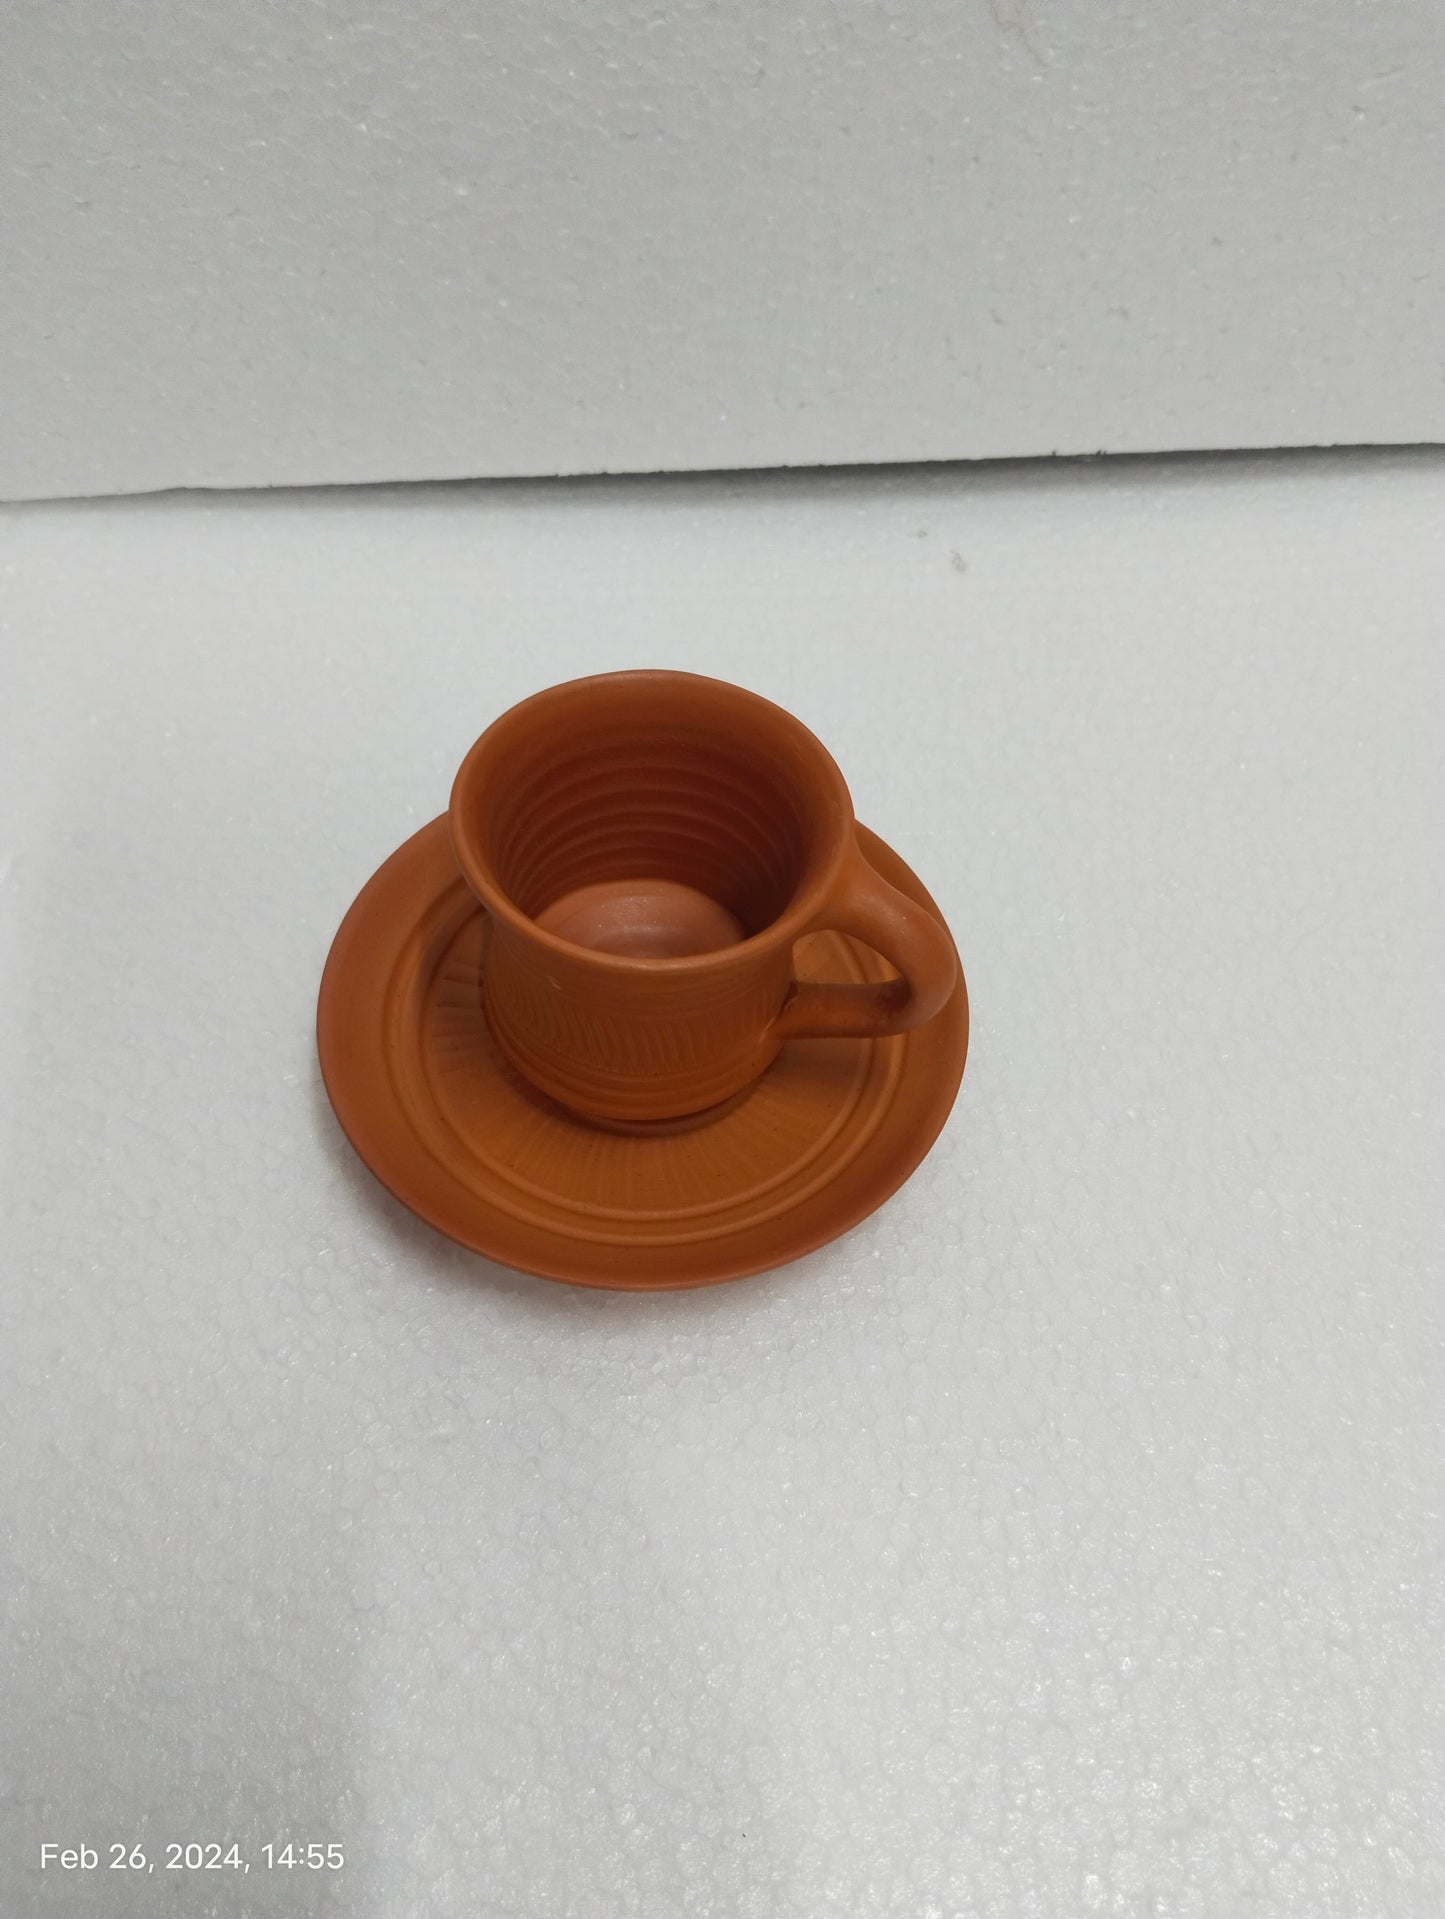 Clay Cup Saucer -  Set of 6 pcs